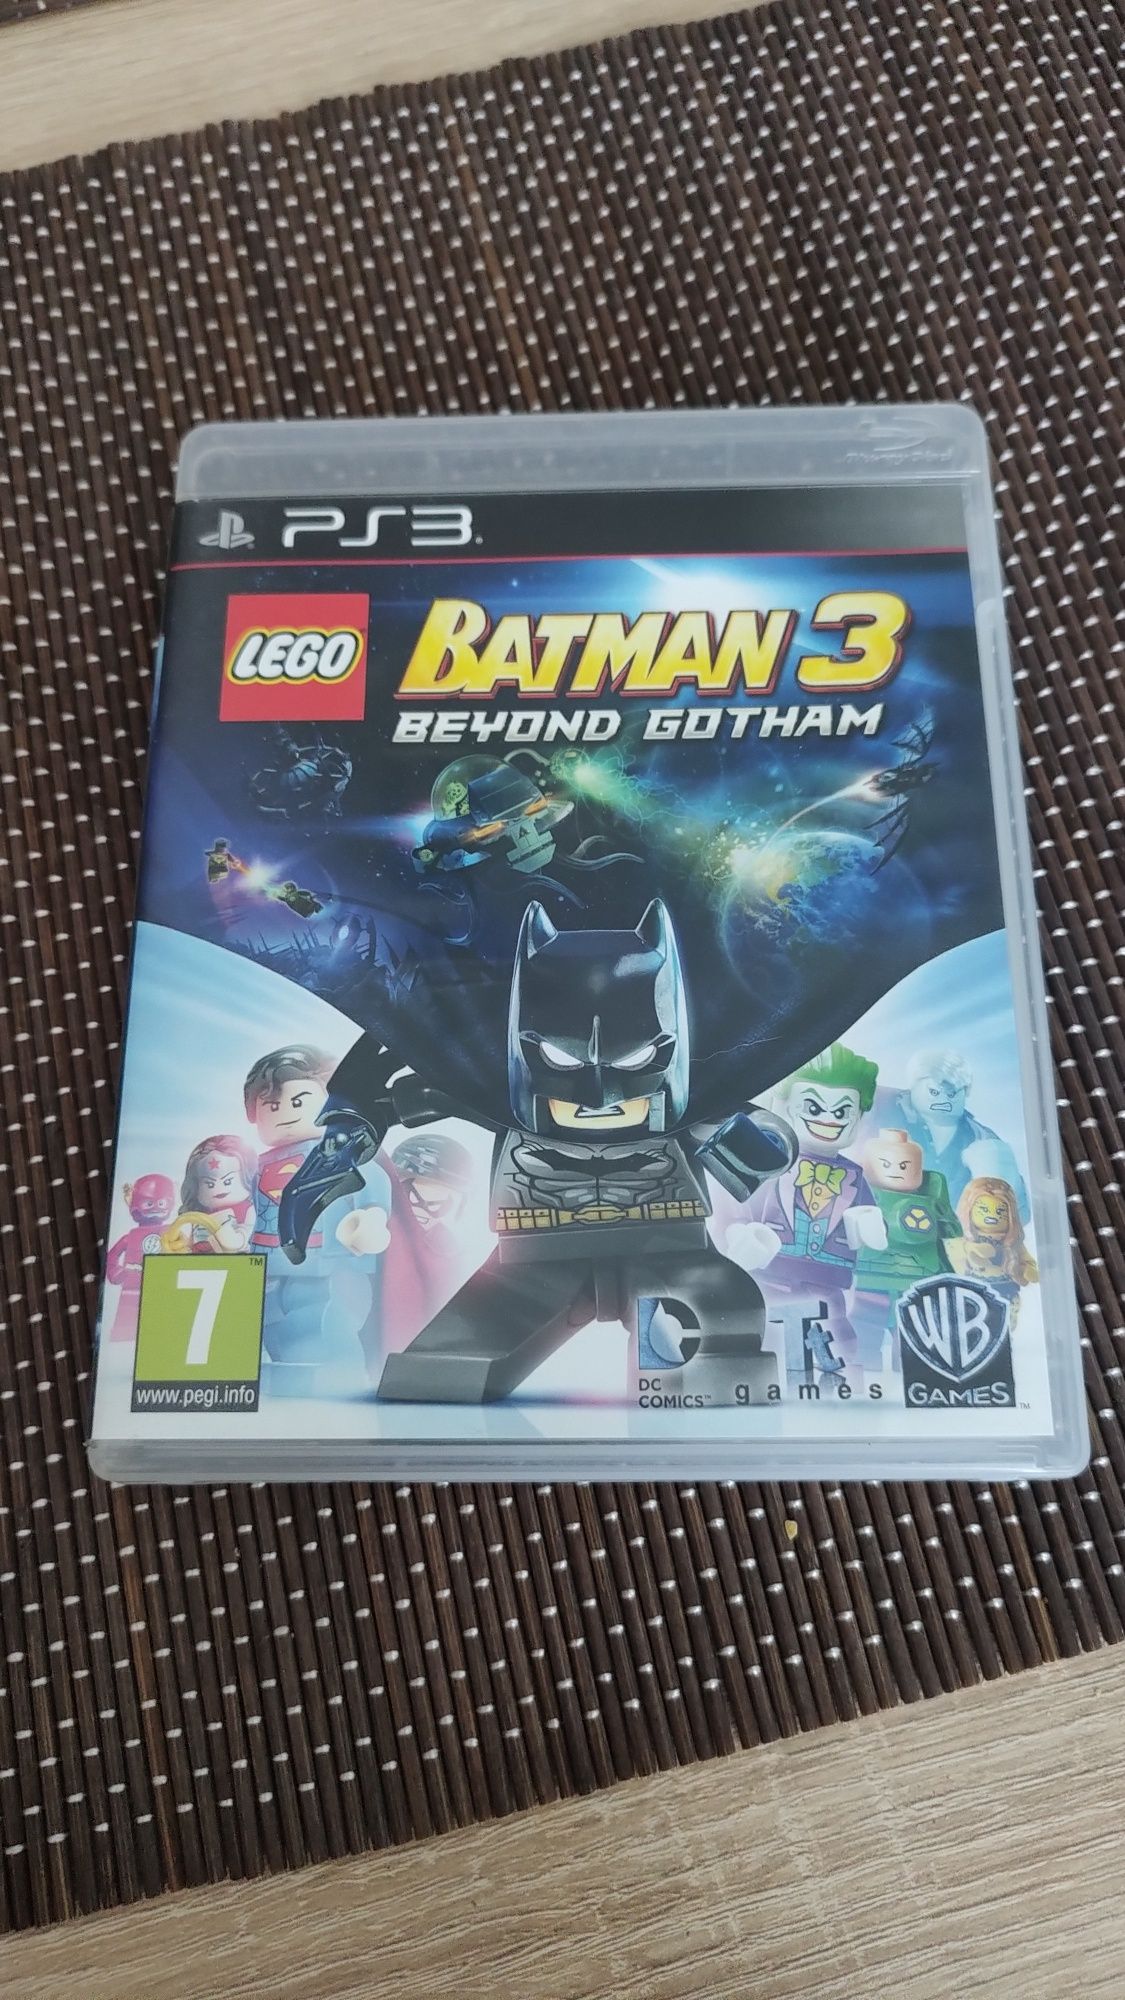 LEGO PS3 Batman 3